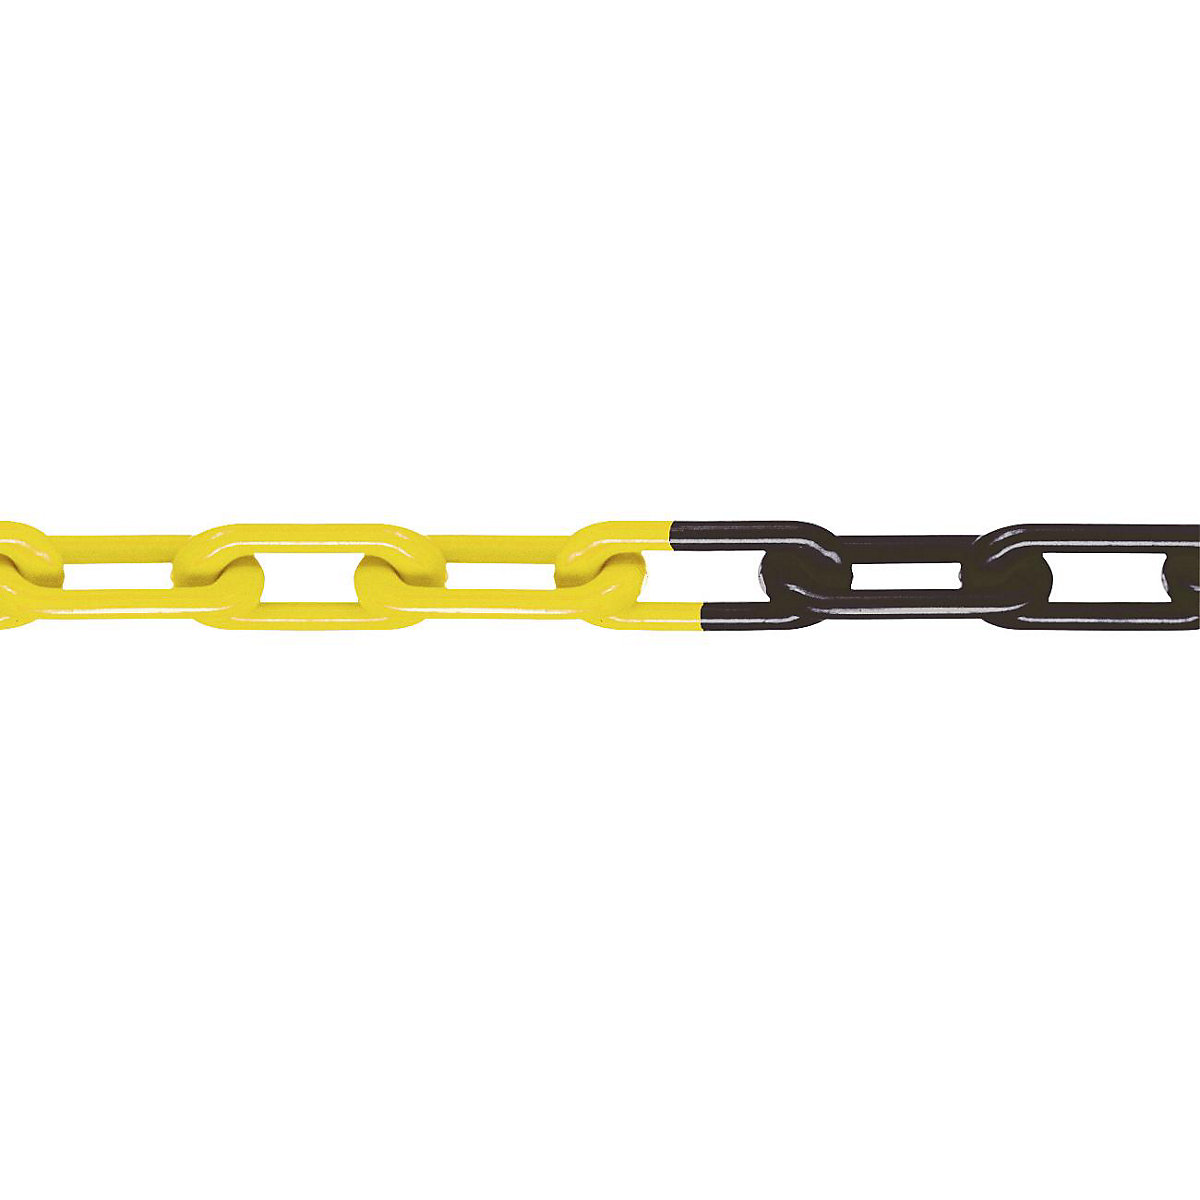 Minőségi nylon lánc, MNK-minőség 8, köteghossz 25 m, fekete-sárga, 4 darabtól-4